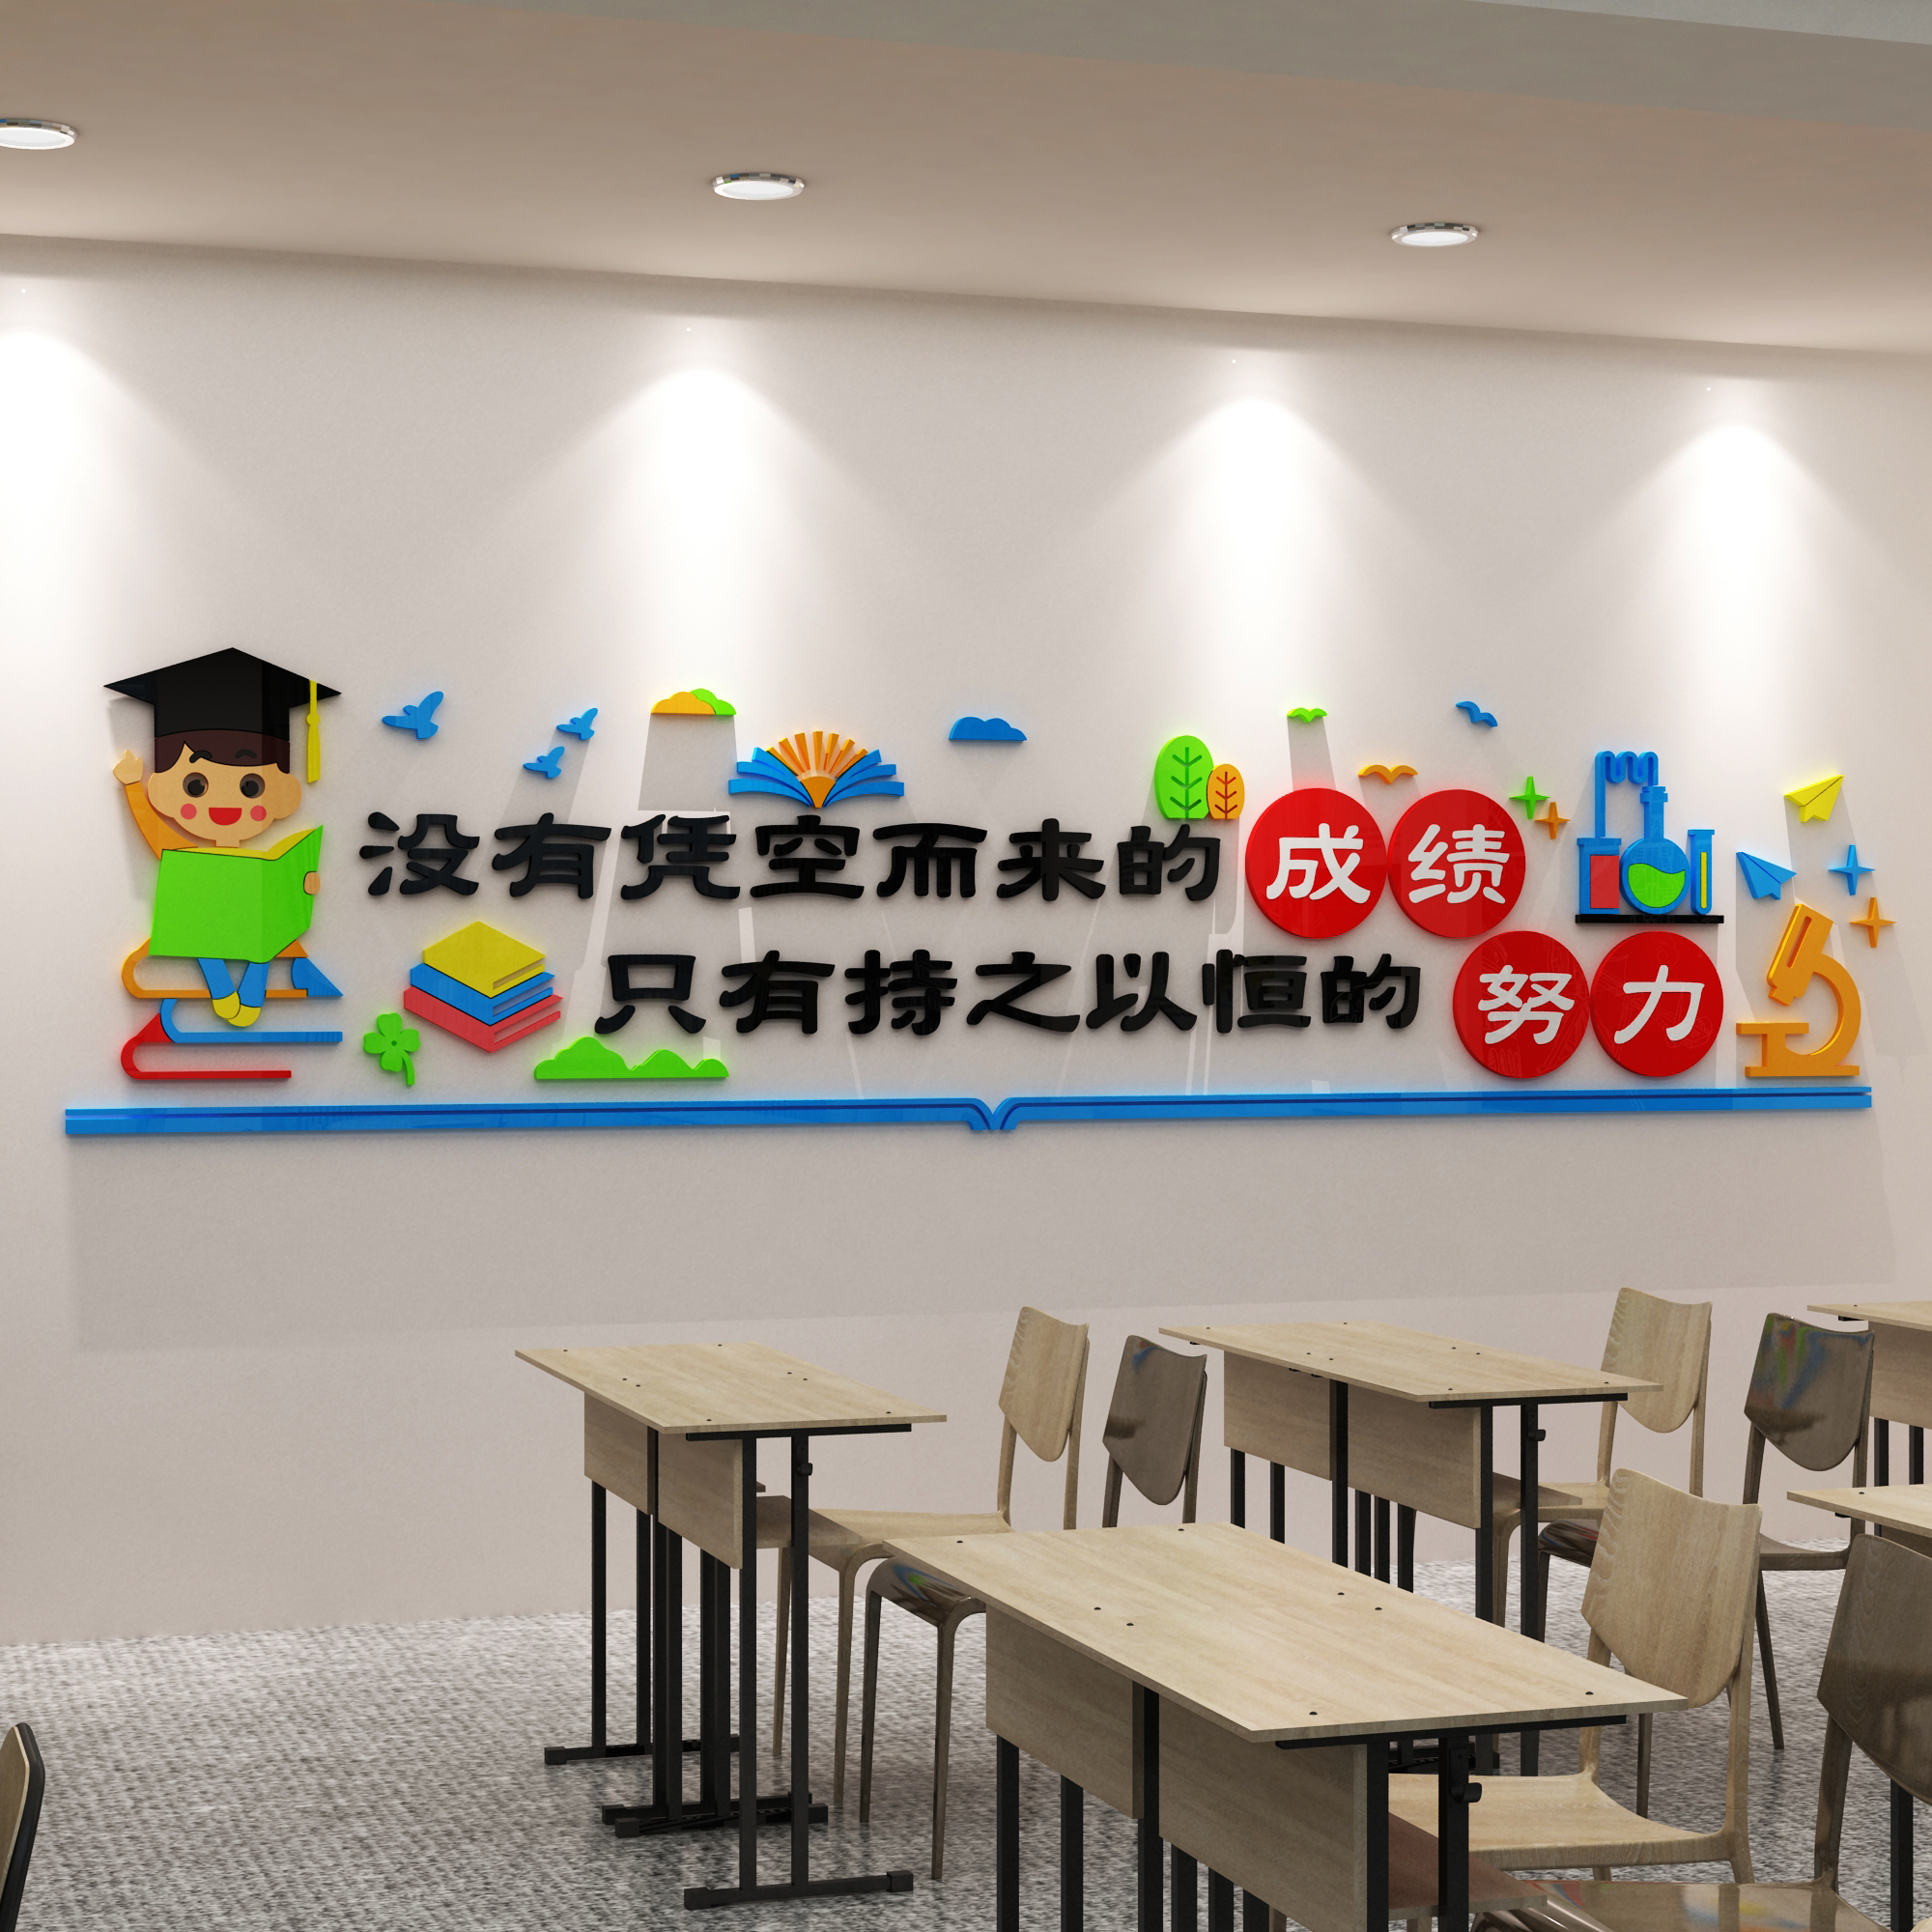 教室布置装饰班级文化墙贴画学校图书馆励志标语教育培训机构布置